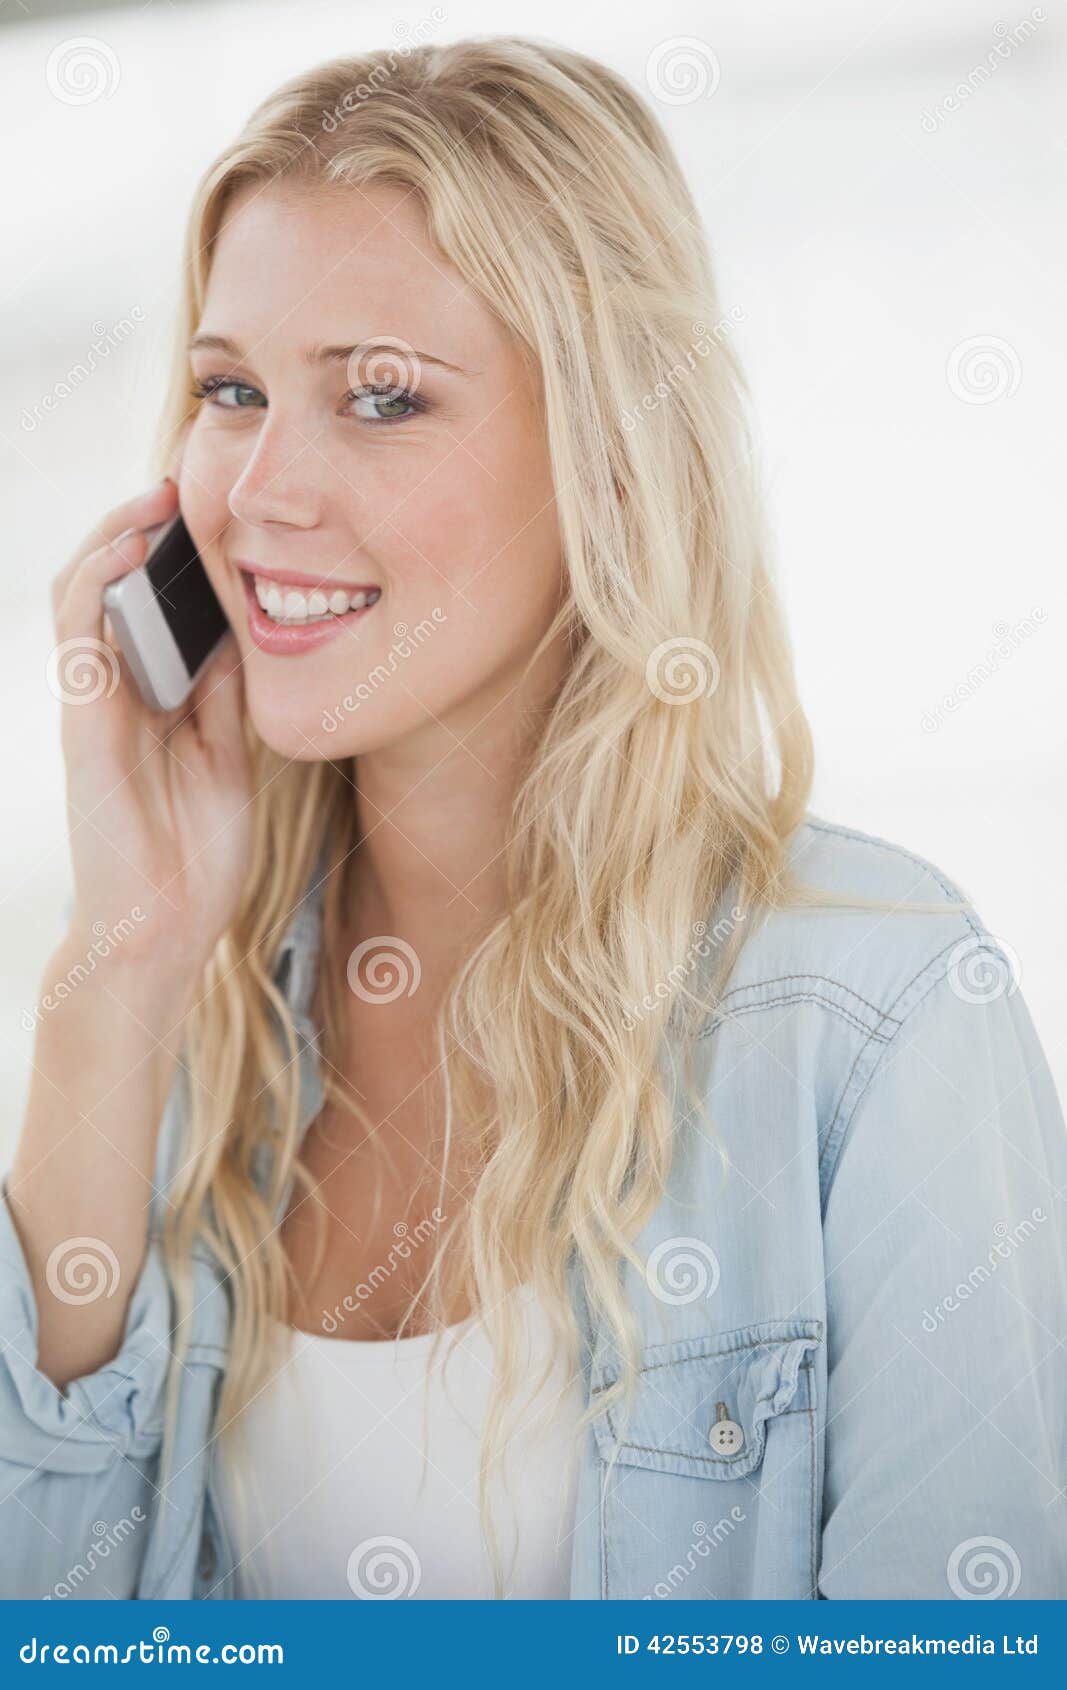 Снято на телефон с блондинкой. Блондинка с мобильником. Блондинка говорит по телефону. Блондинка с телефоном. Девушка блондинка с телефоном.